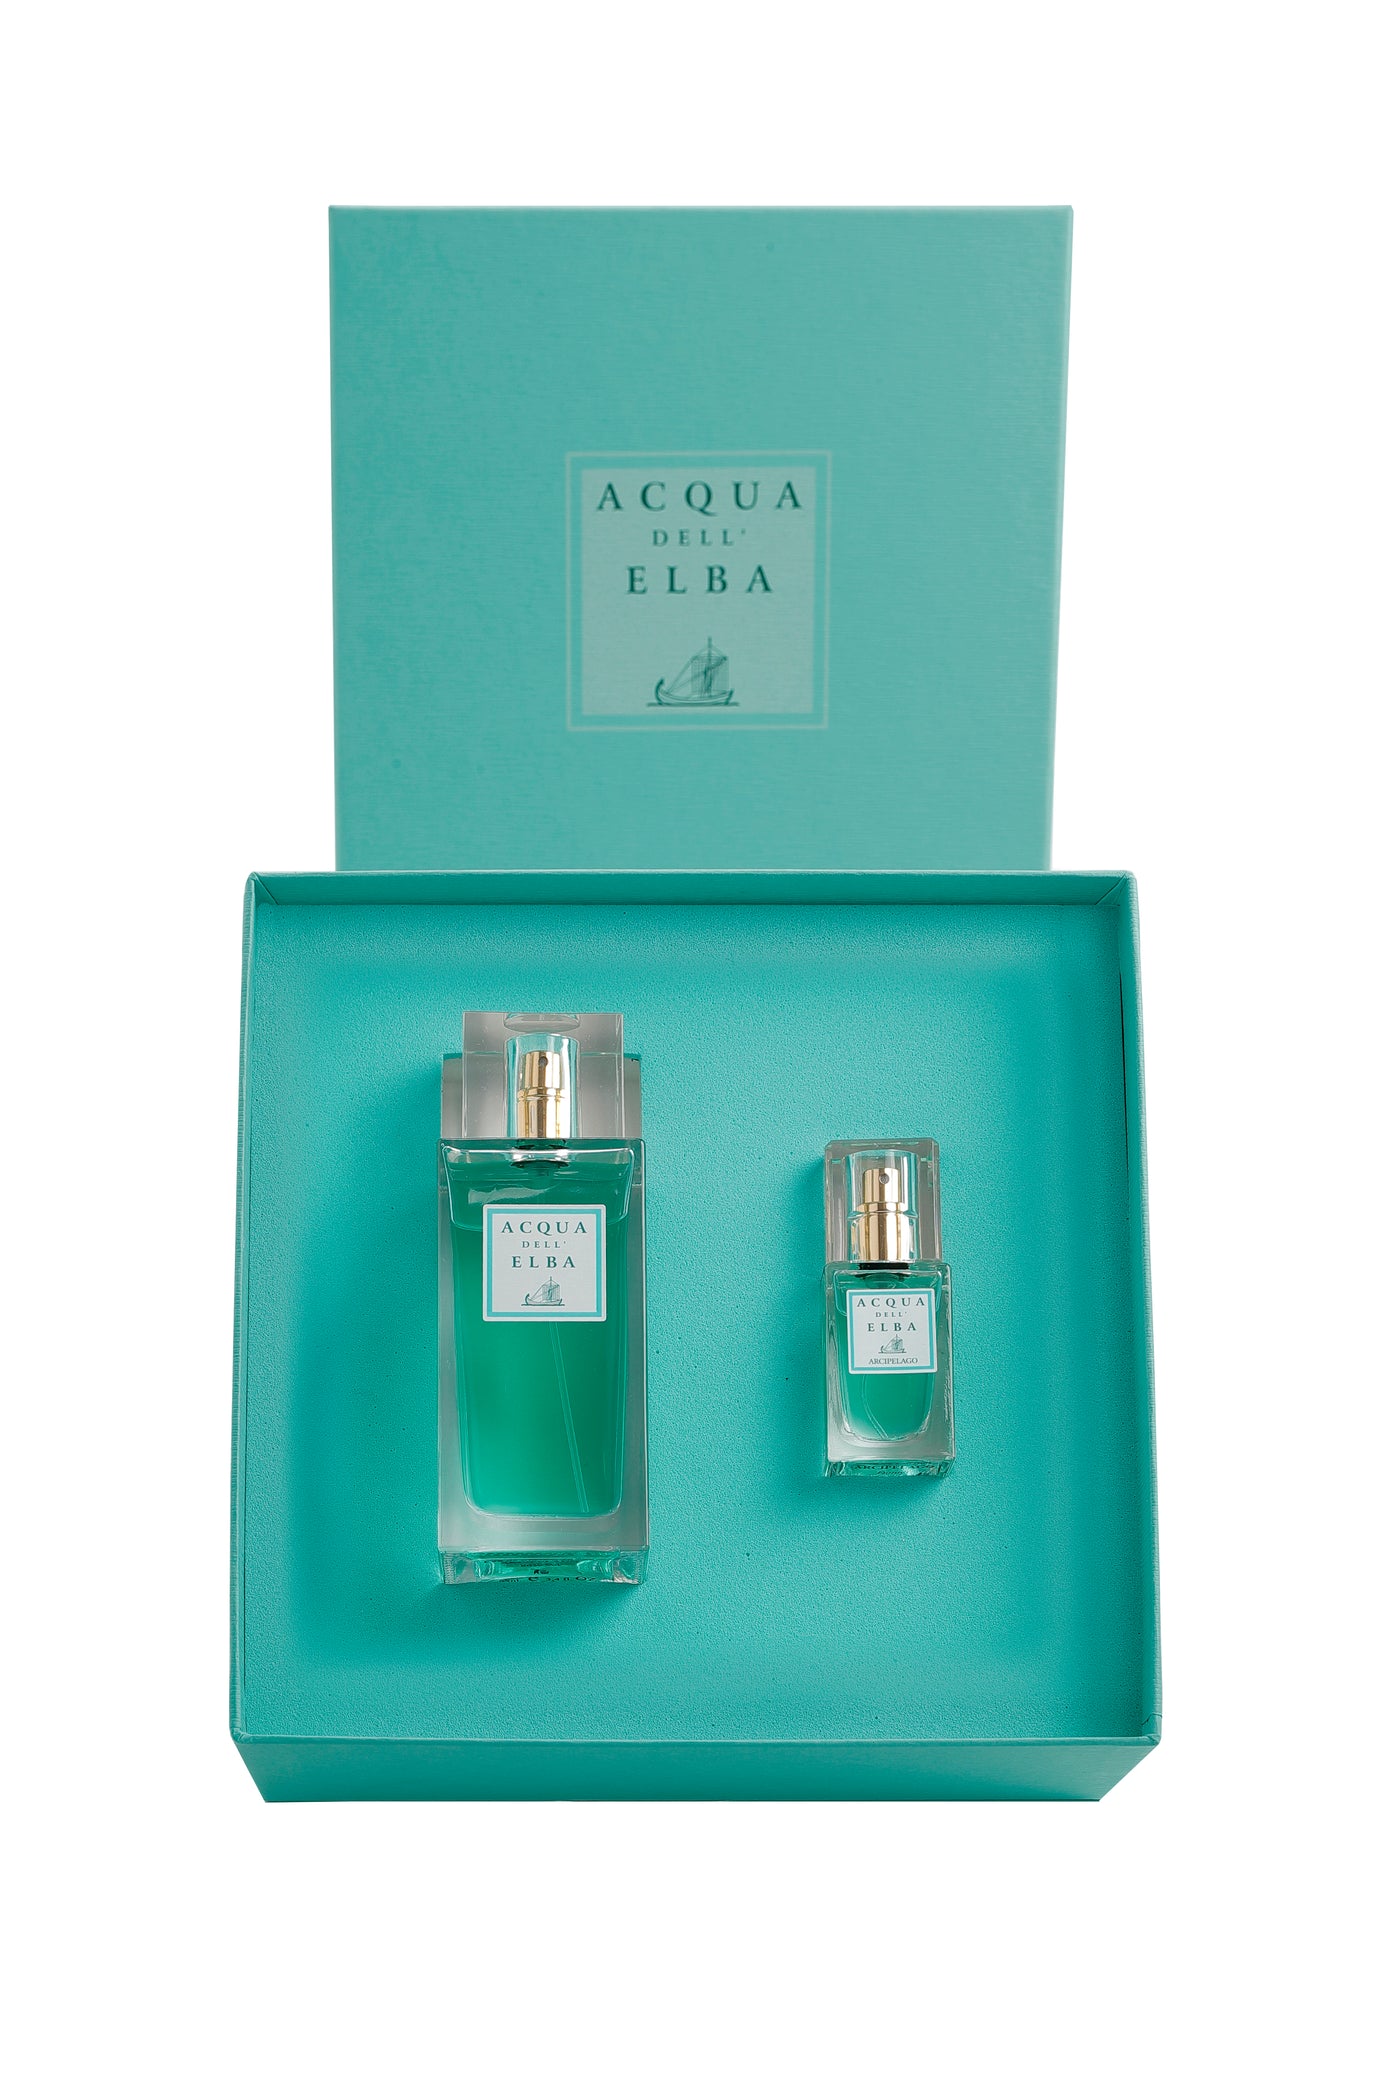 Arcipelago Donna Gift Set: 100ml Eau de Parfum with 15ml Travel Size